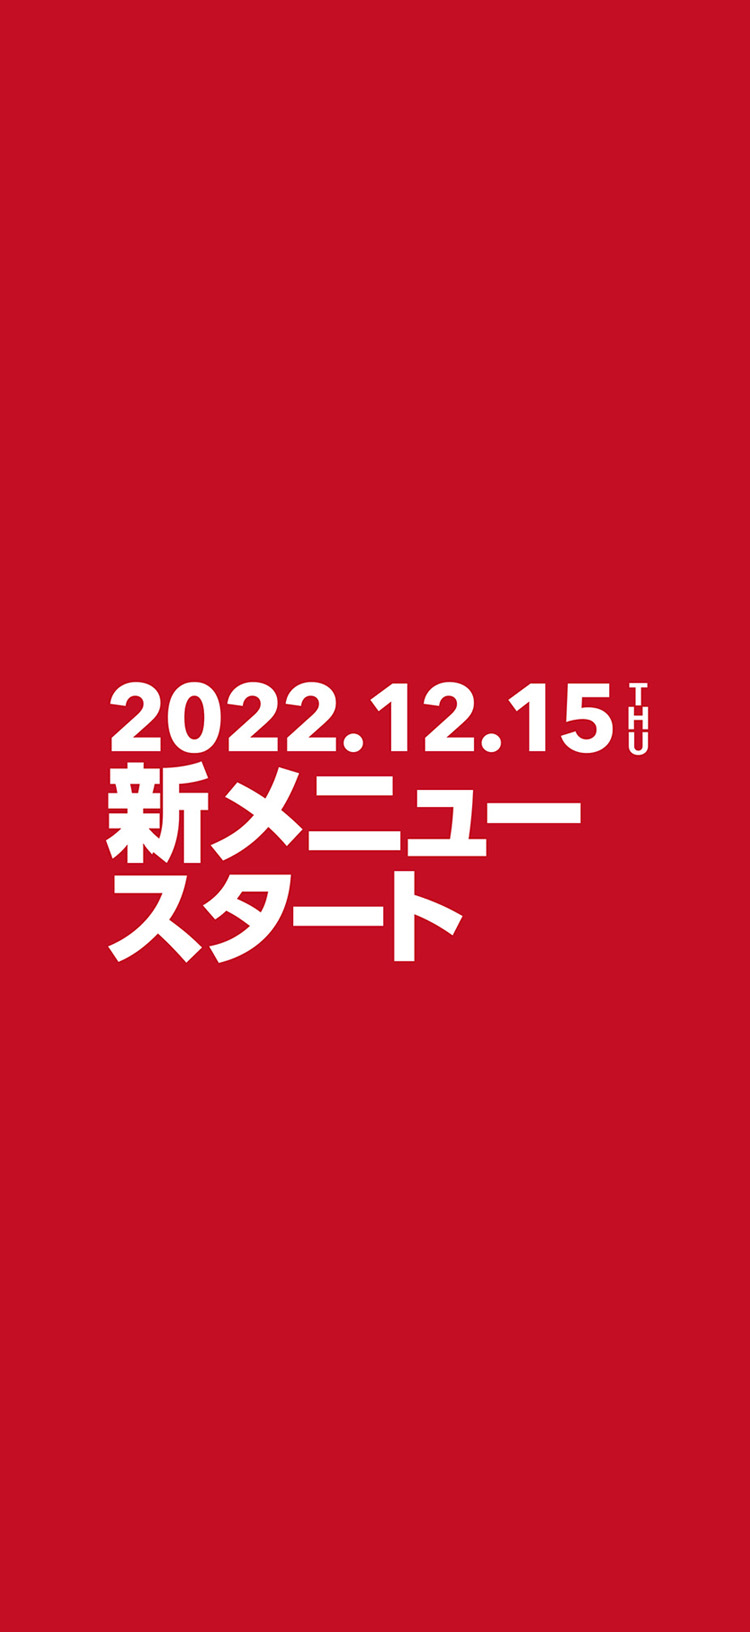 2022.12.15 THU新メニュースタート